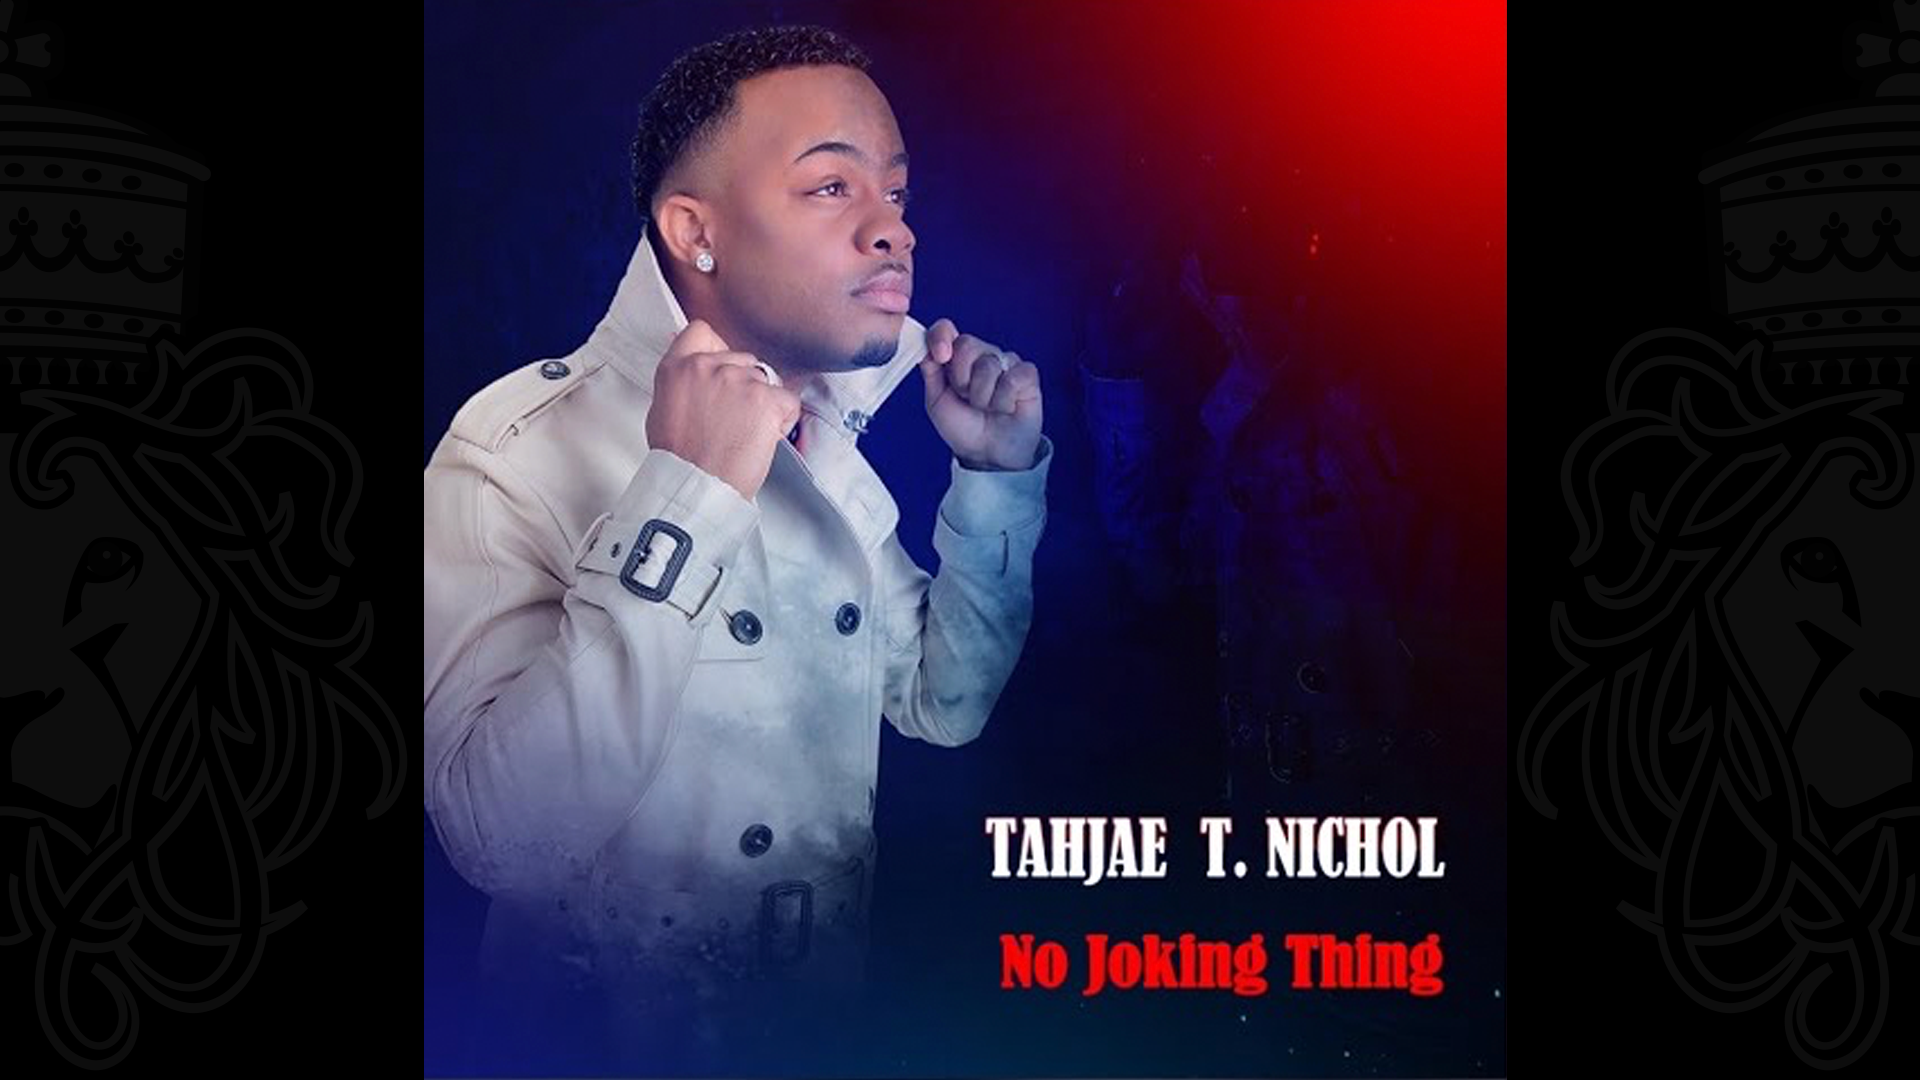 Tahjae T. NICHOL. - No Joking Thing